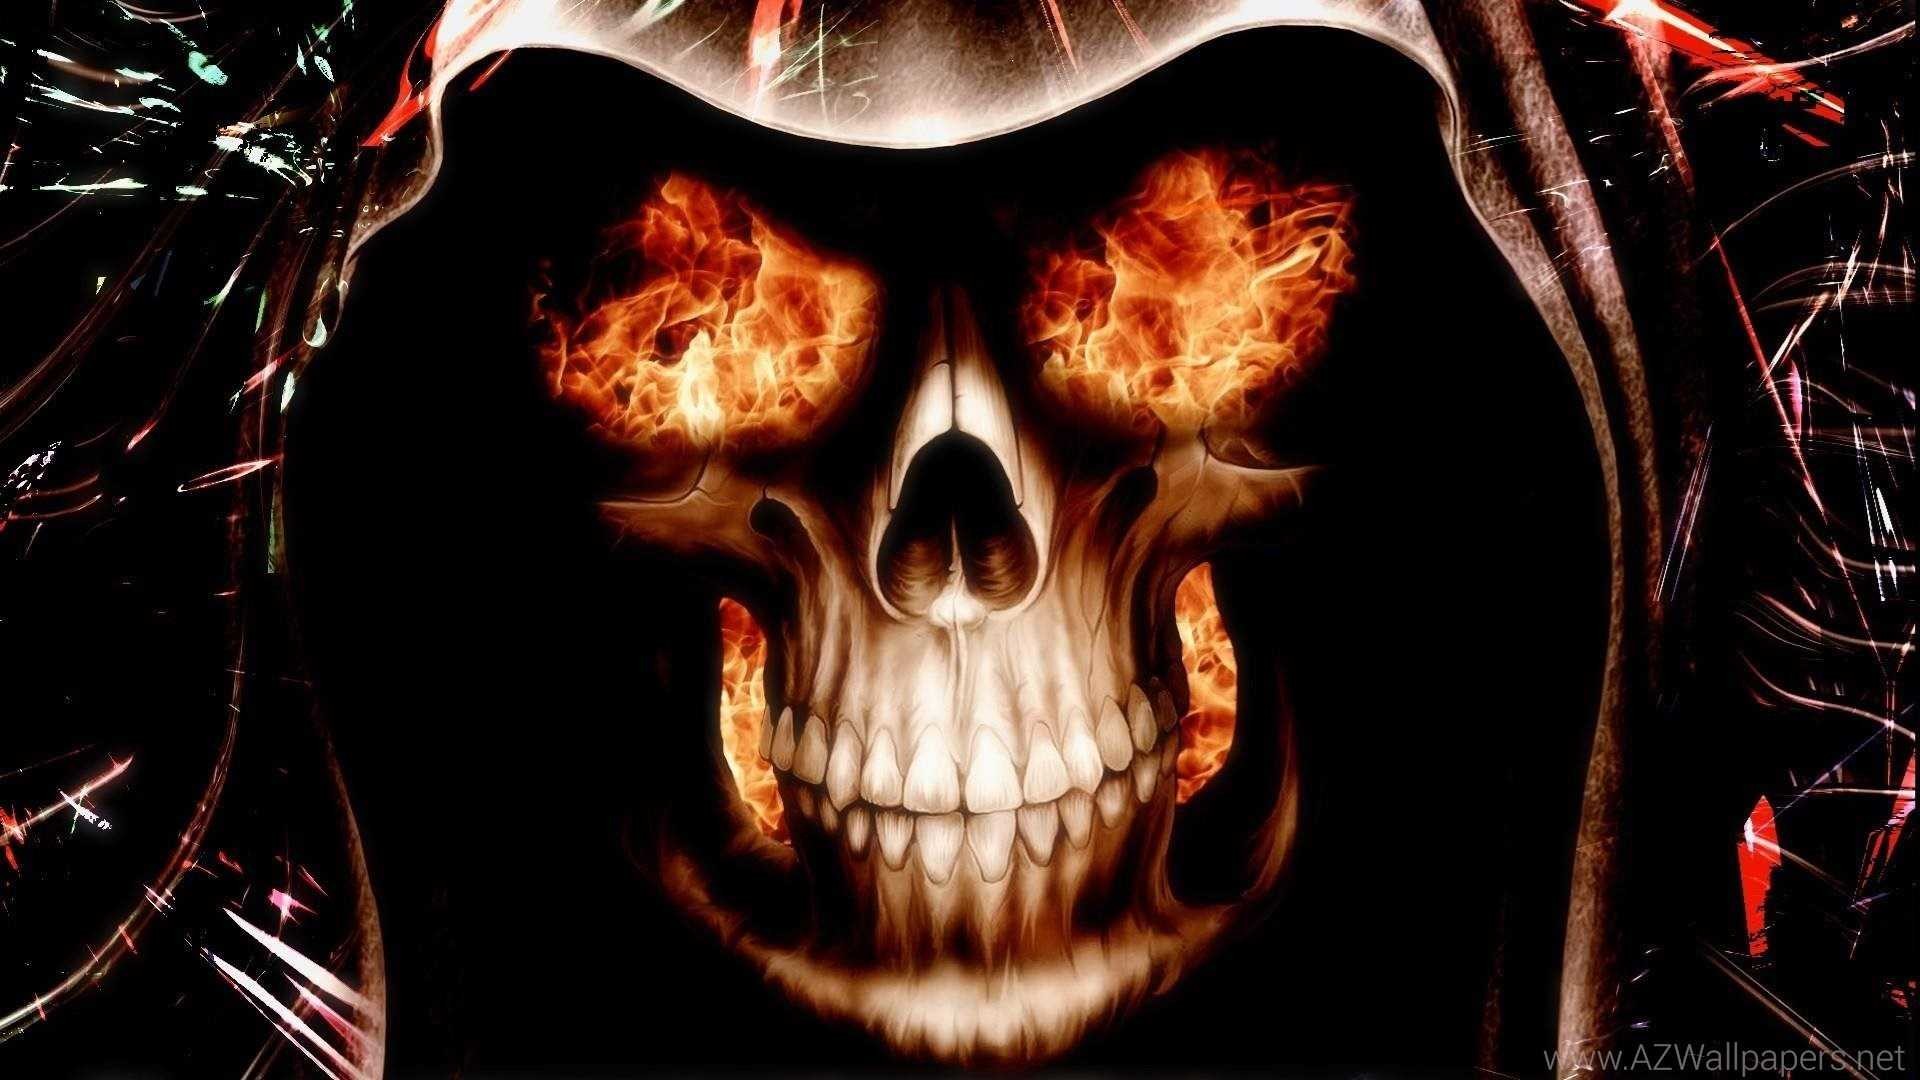 1920x1080  Skull Hd Fire Wallpaper 4k Full Pics For Laptop Skulls |  Wallvie.com